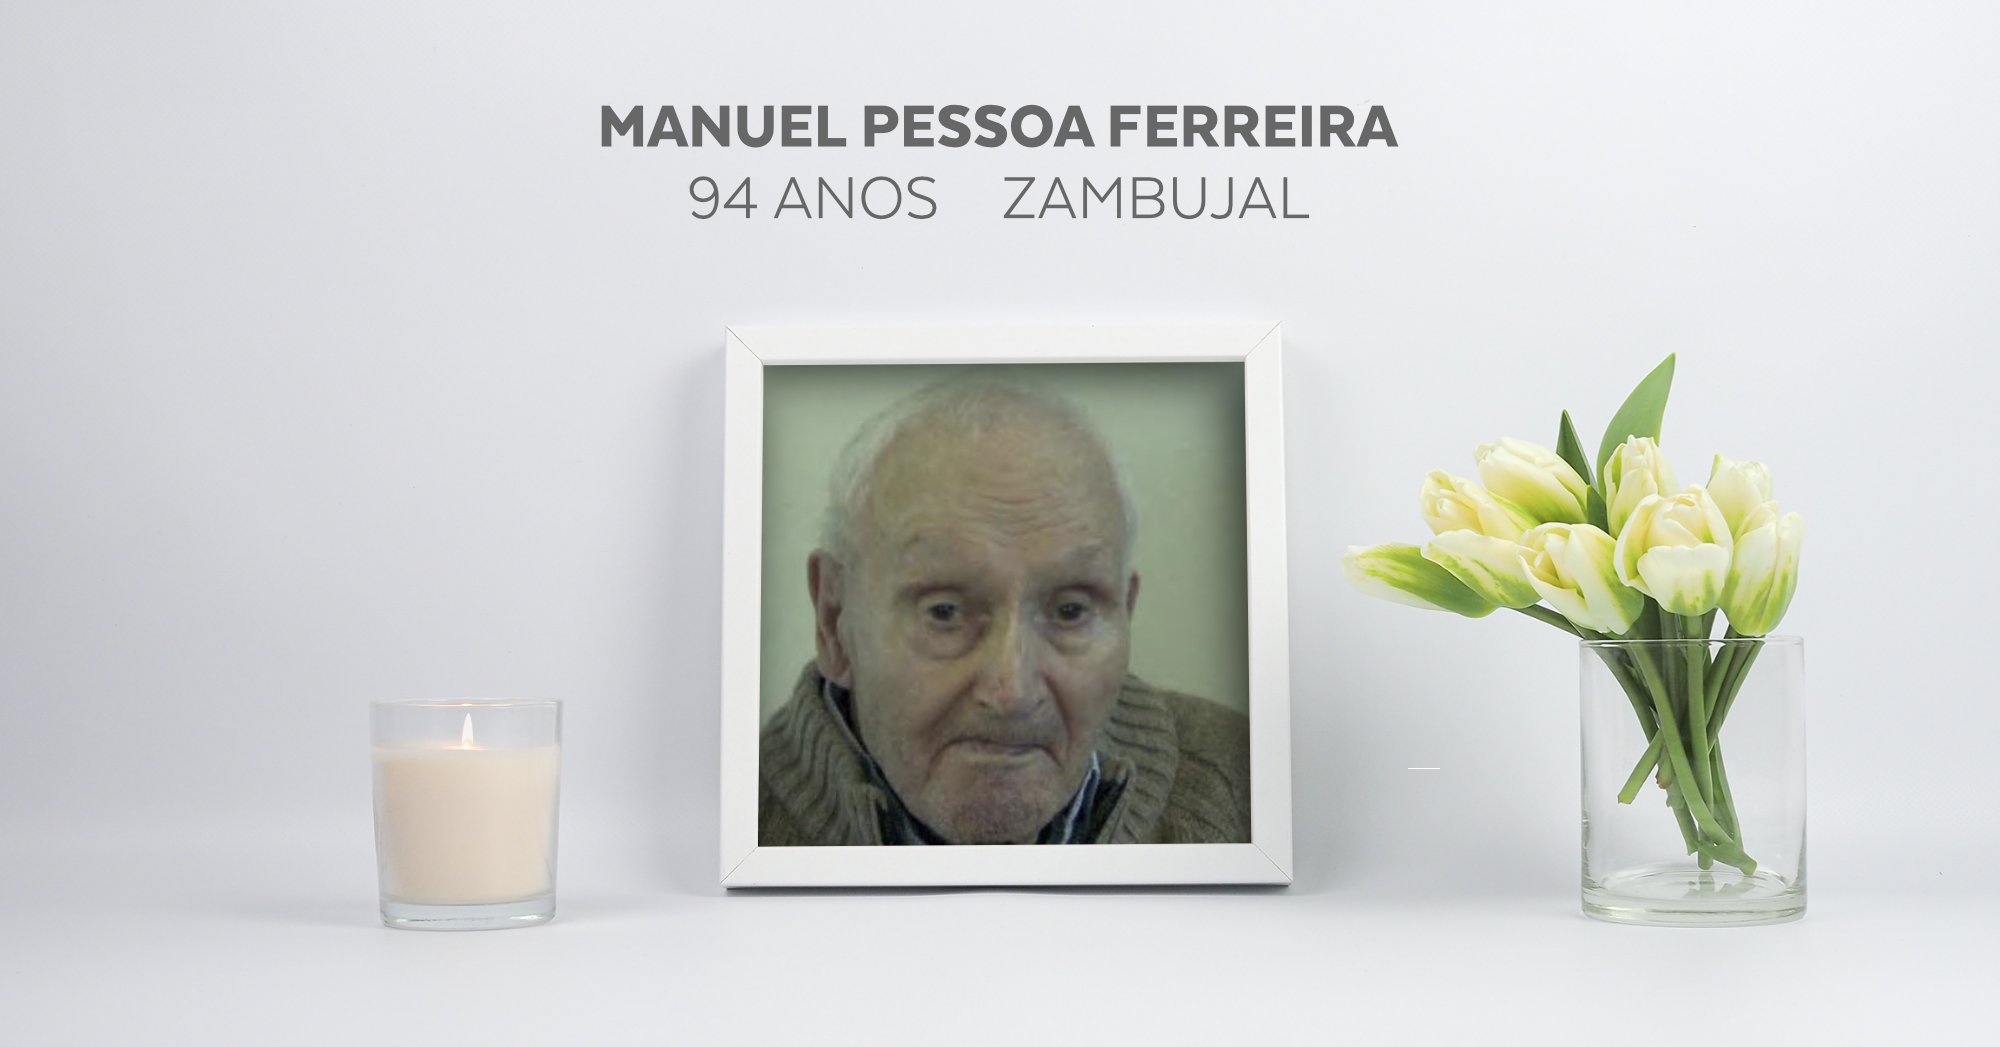 Manuel Pessoa Ferreira